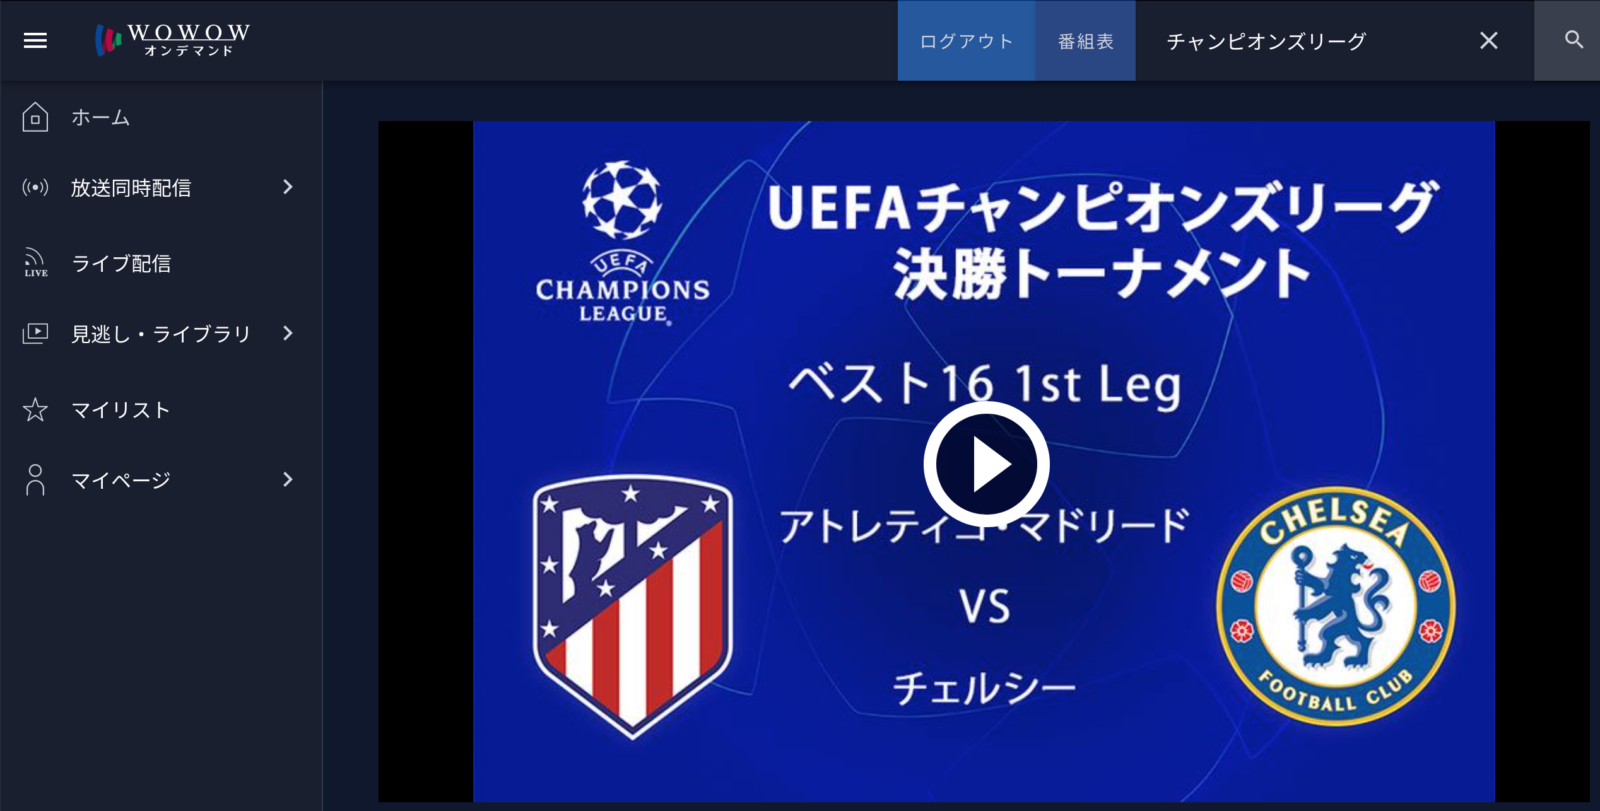 チャンピオンズリーグ 無料で視聴できる Uefa Tv って知ってますか 今すぐuefa公式アプリ Uefa Tv をインストールしよう エントラ フットボール